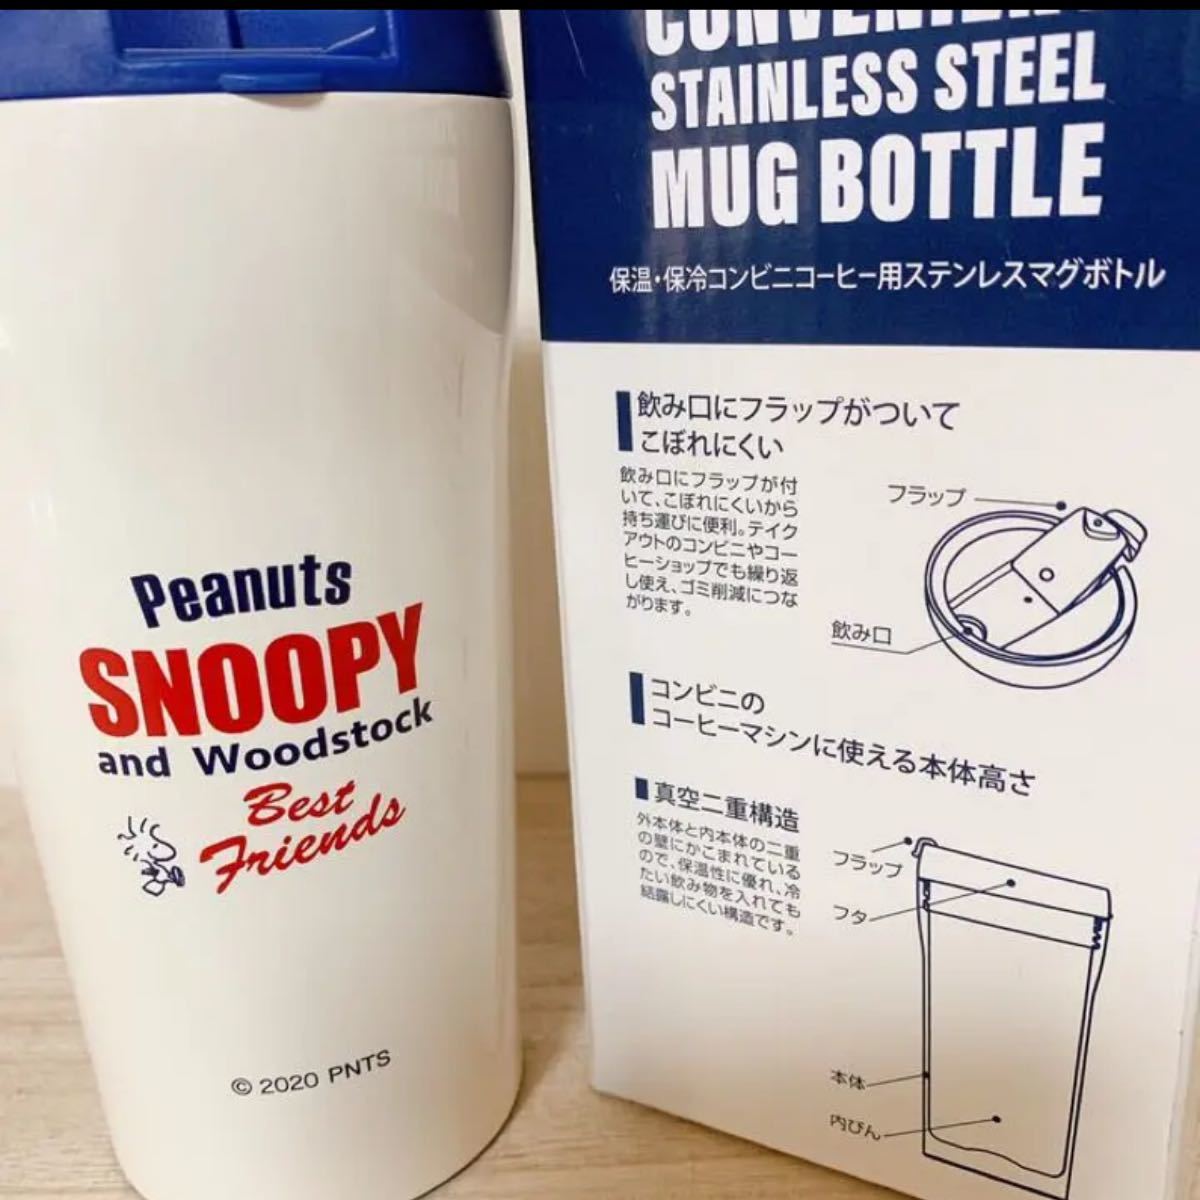 スヌーピー ☆保温保冷コンビニコーヒー用ステンレスマグボトル